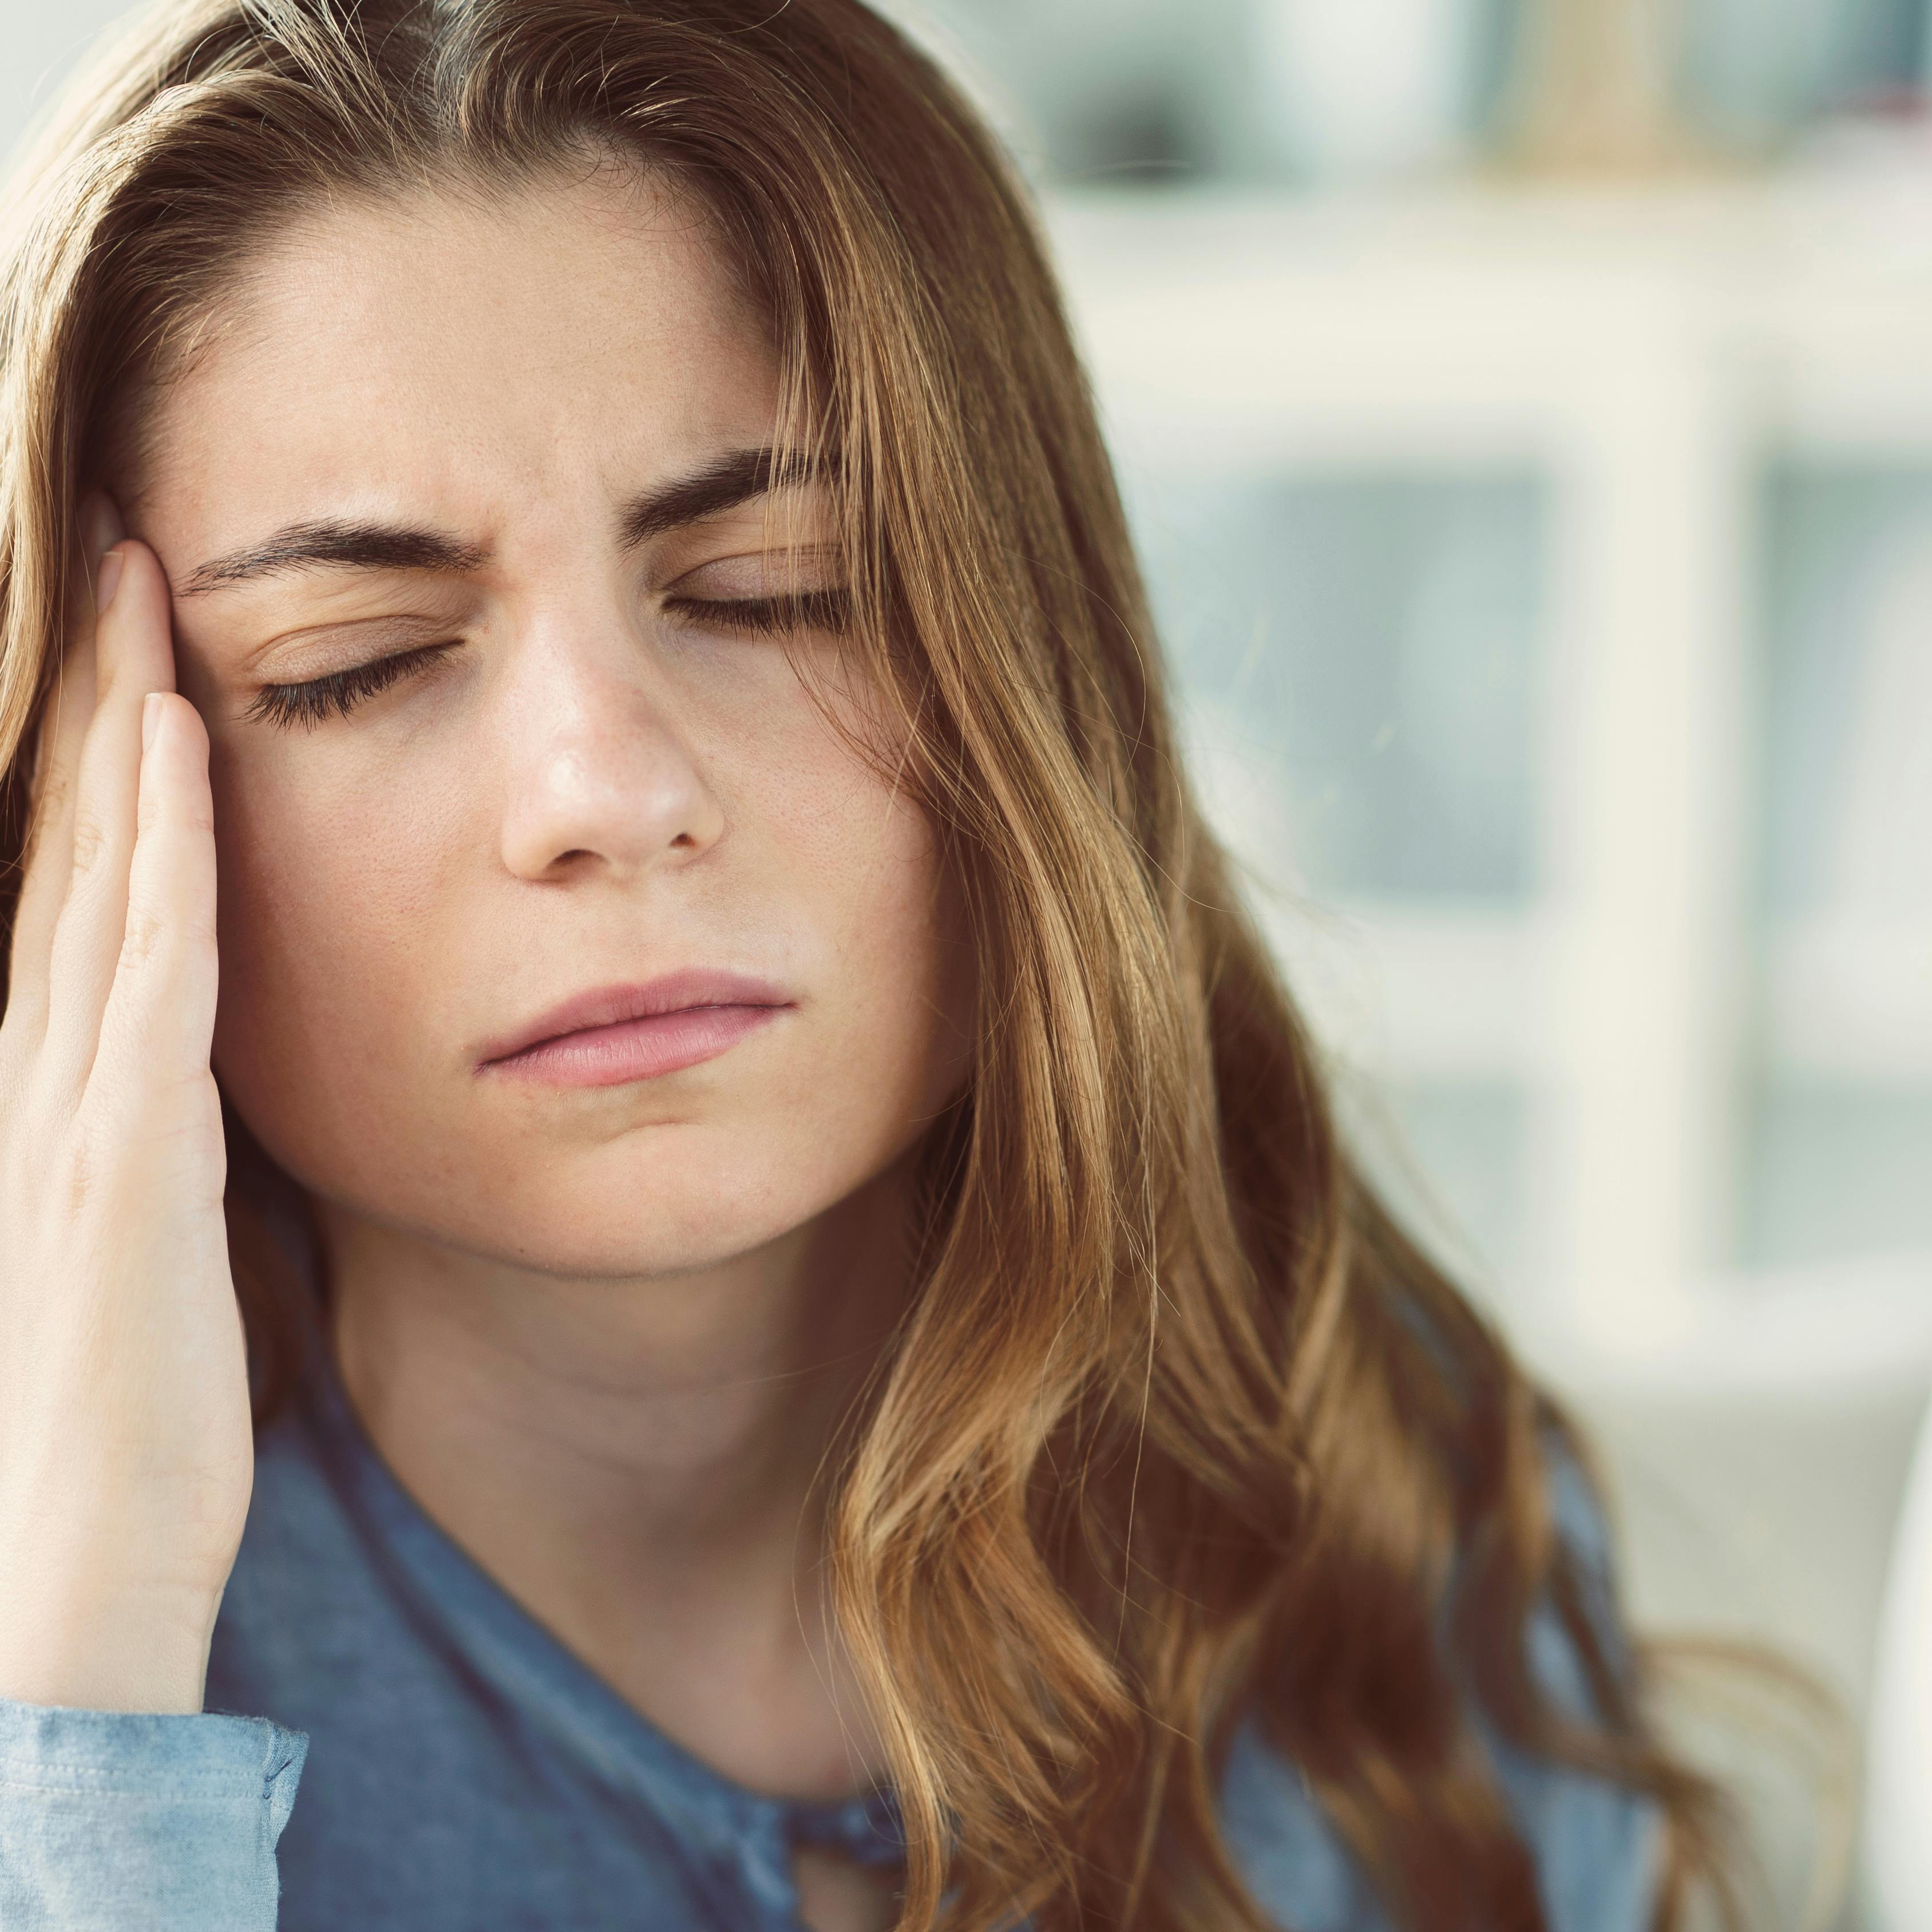 hovedpine symptomer årsag behandling